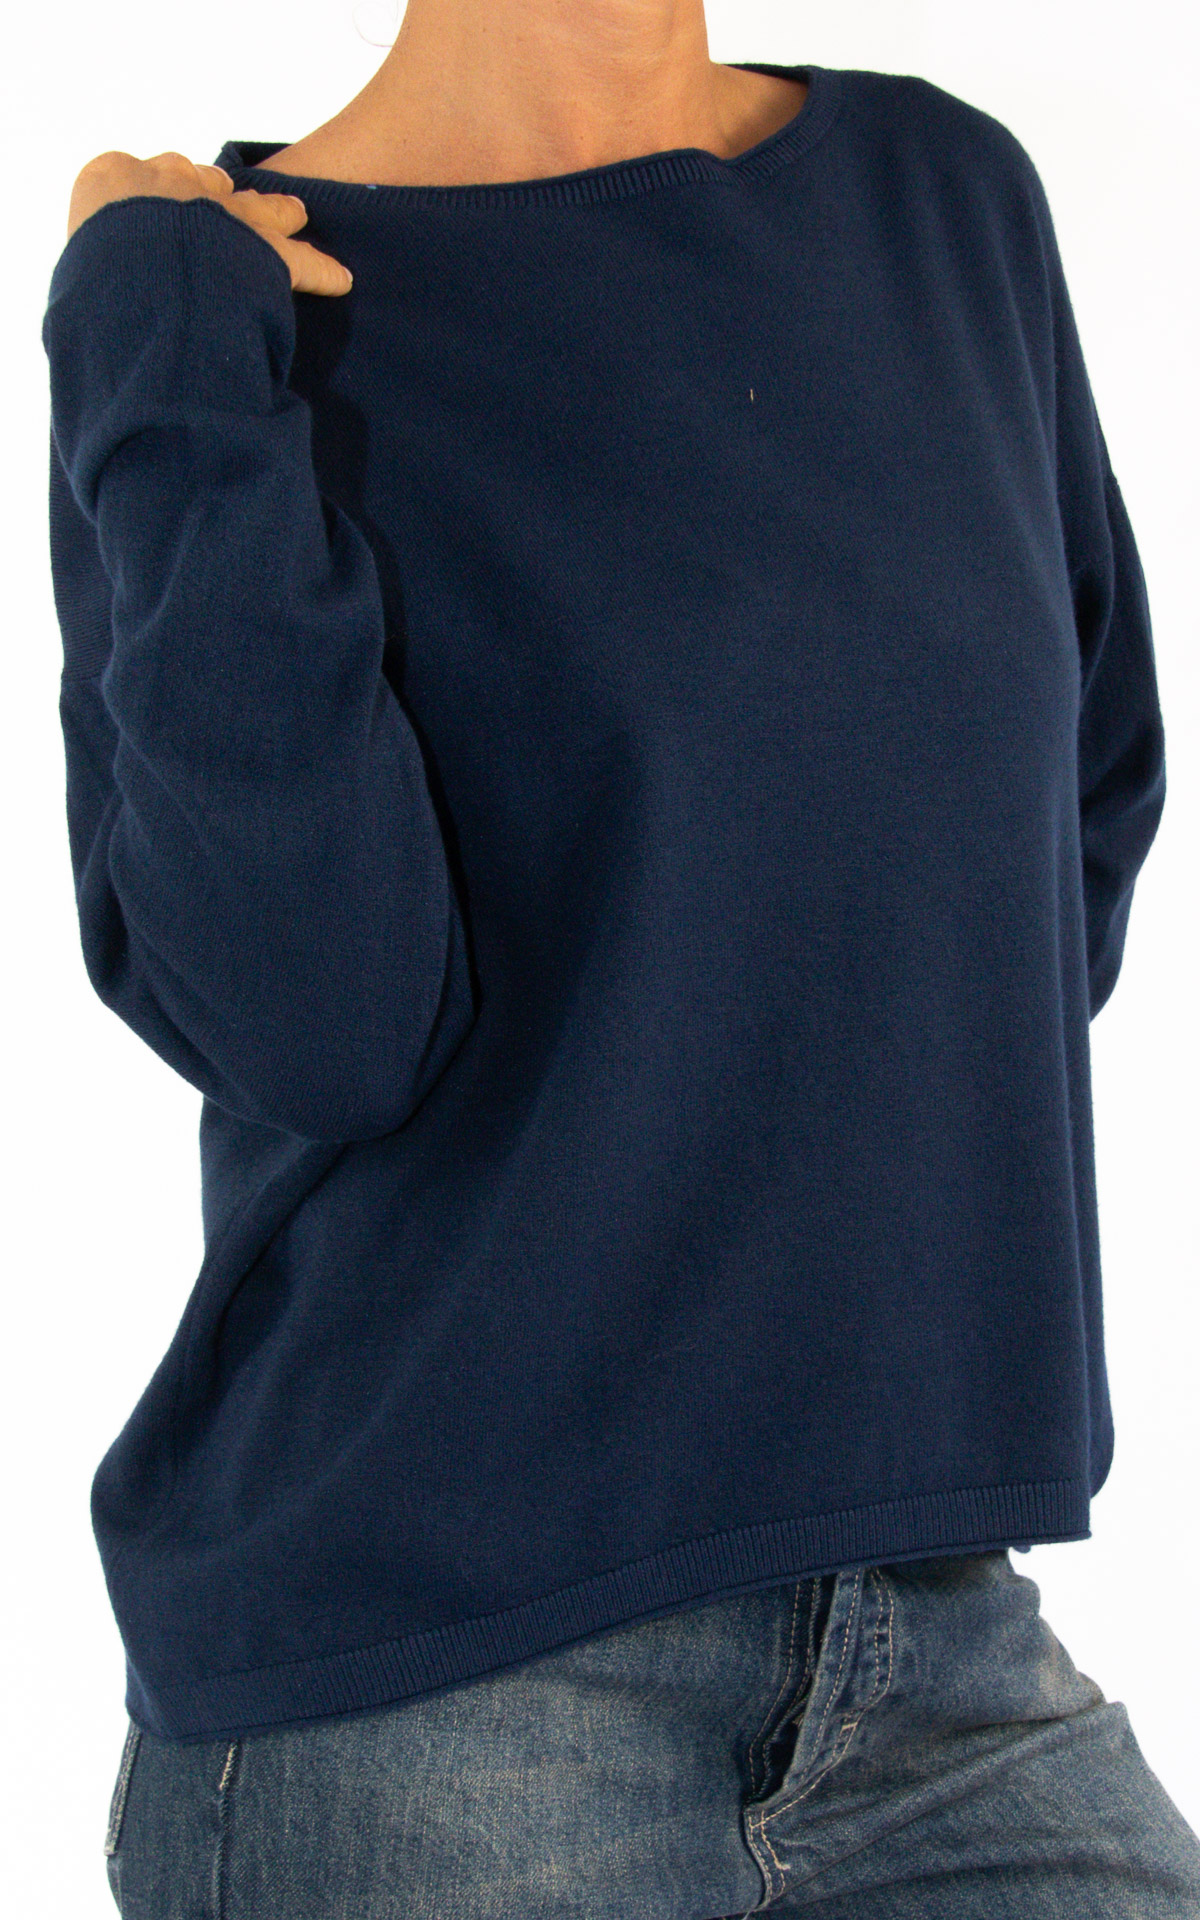 Initial - maglia girocollo - blu